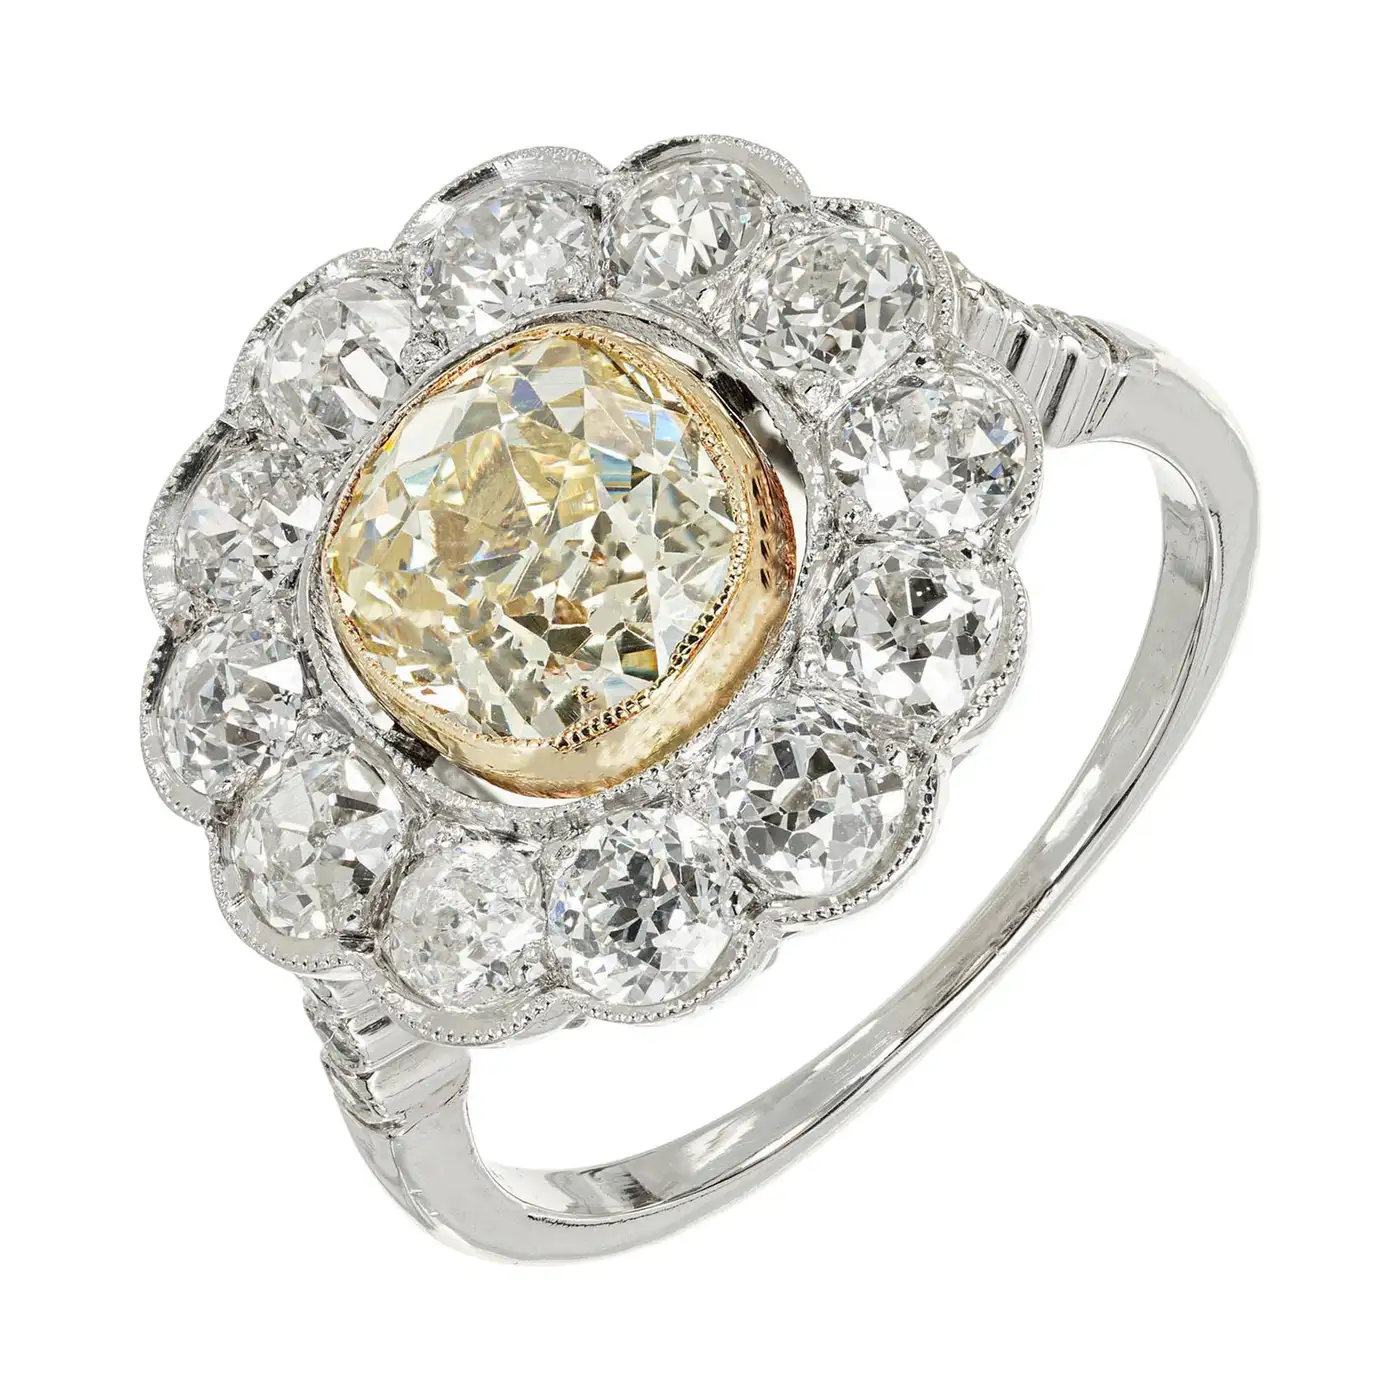 1.39-Carat-Natural-Yellow-White-Diamond-Platinum-Engagement-Ring-GIA-Certified-8.webp